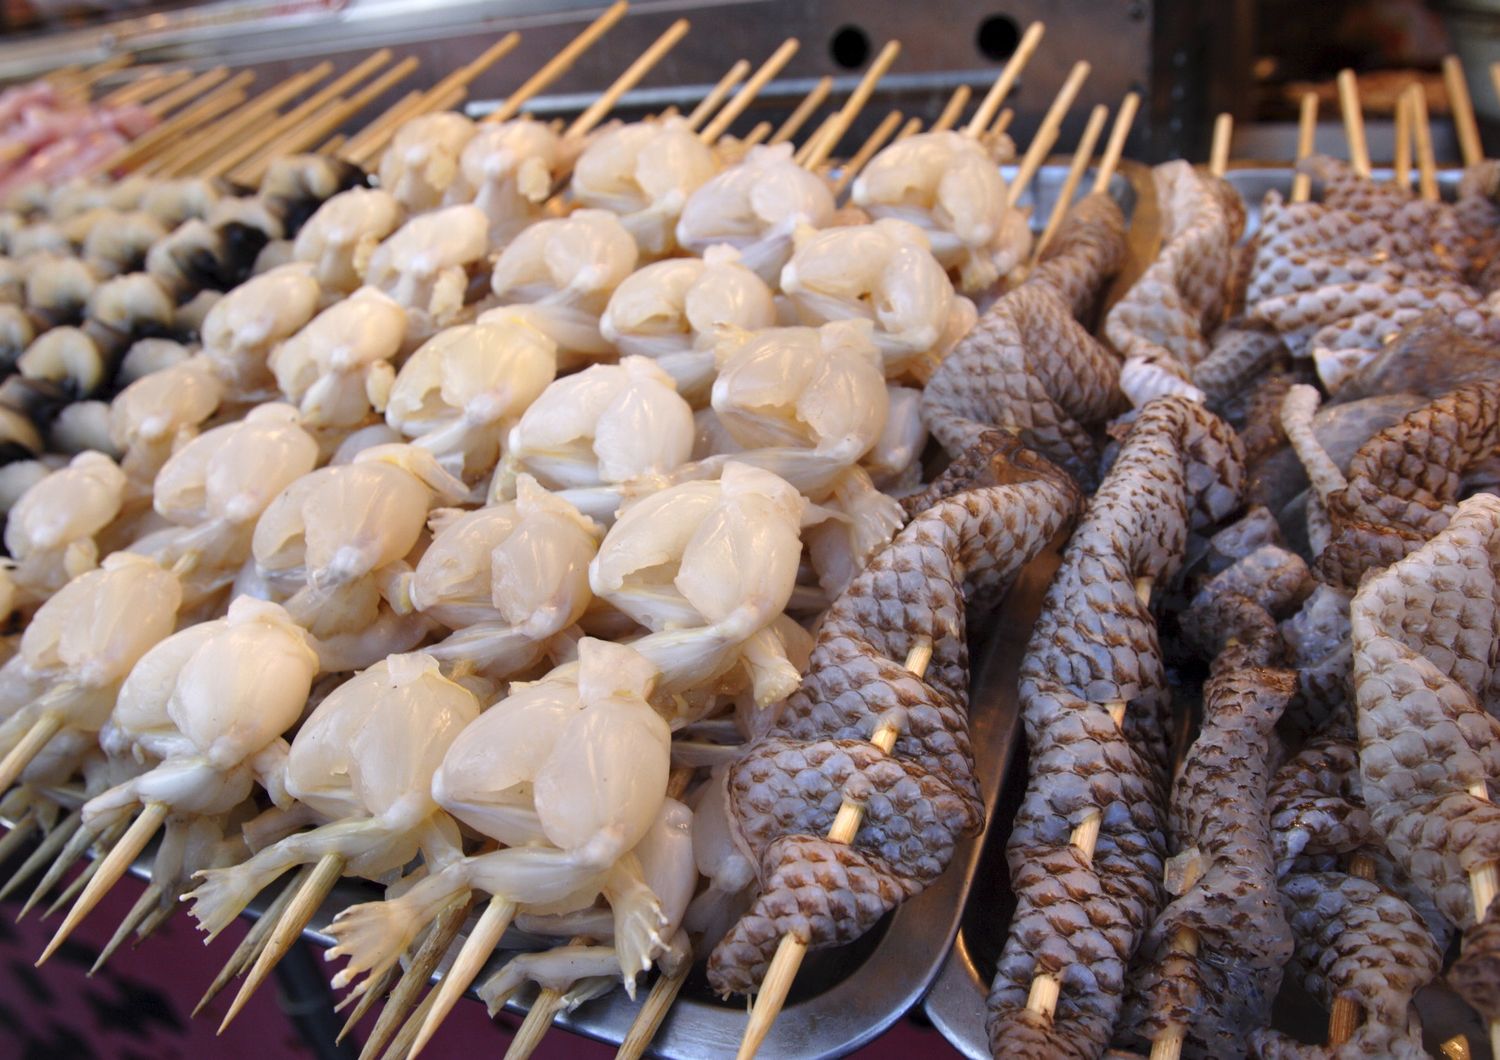 Cosce di rana e pelli di serpenti vendute in un mercato cinese, come quello da cui si sospetta sia partito il coronavirus